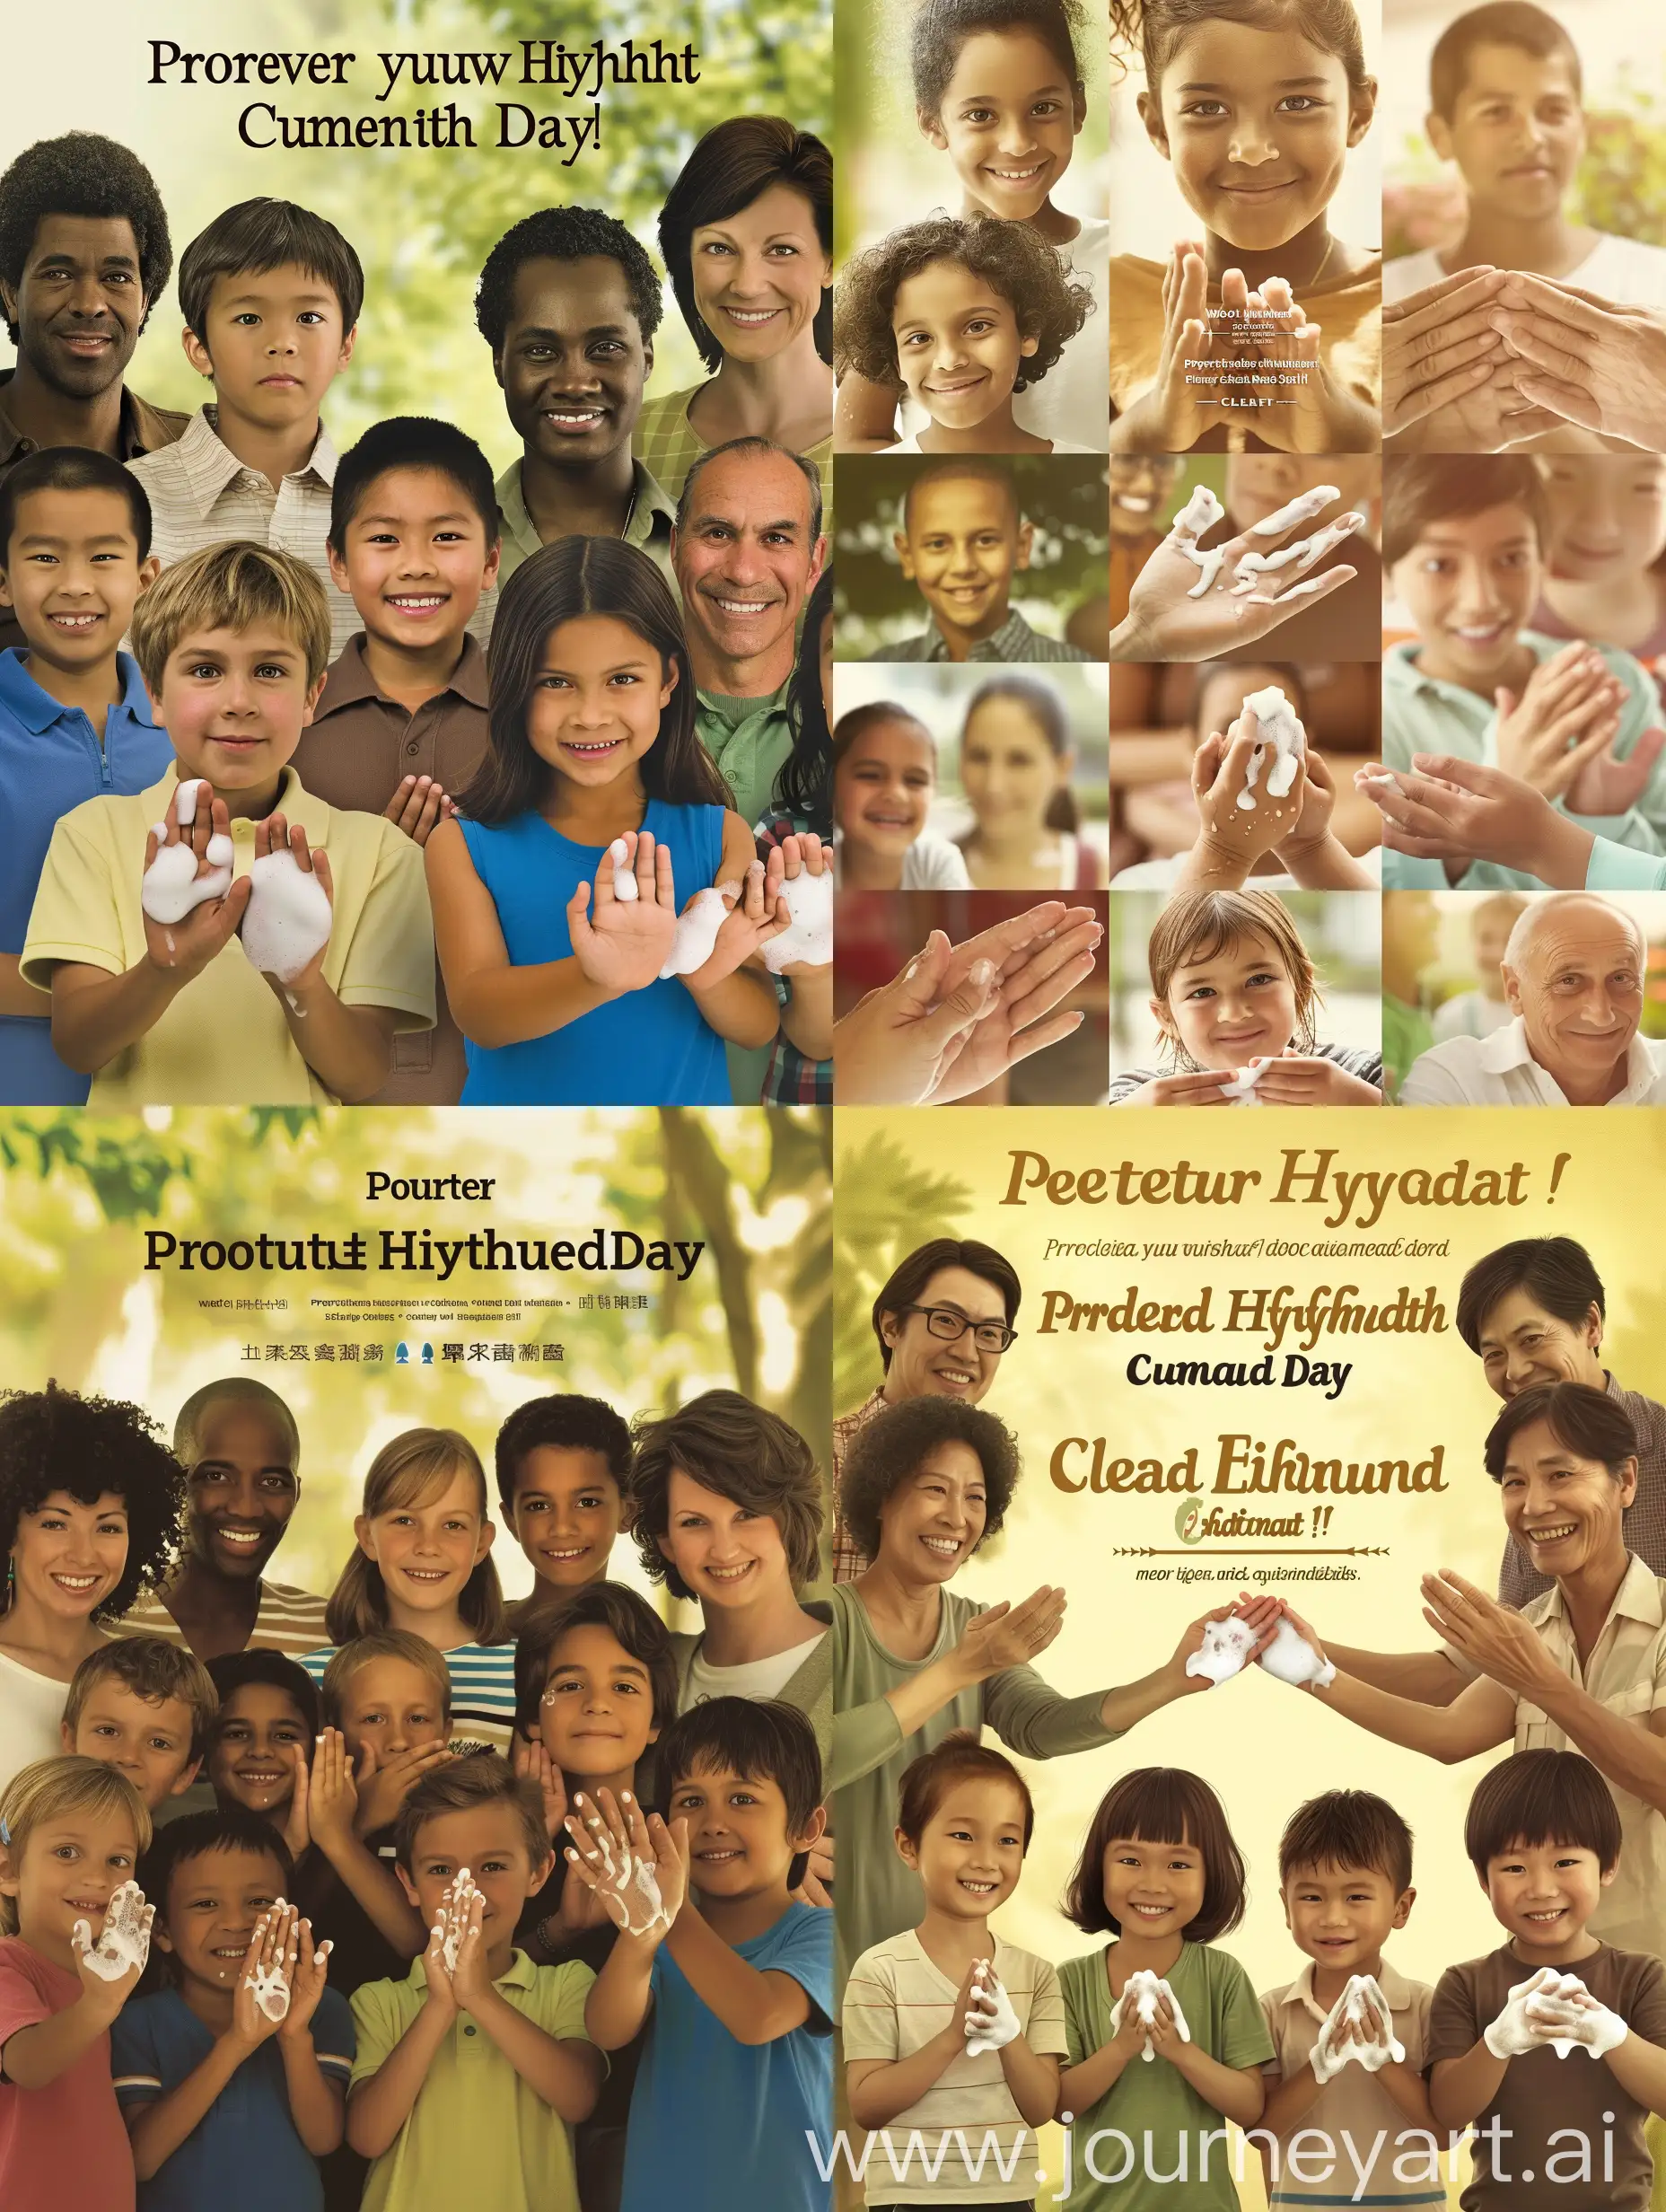 [美丽风格] 一张庆祝世界手卫生日的海报，展示着人们洁净的双手，传递着健康和卫生的重要性。

[主题：多种人群] 一群多样化的人们，包括儿童、成年人和老年人，展示着他们清洁的双手，象征着保持卫生健康的重要性。

[重要特征：清洁双手] 每个人都展示着洁净的双手，强调正确洗手的方式和频率，以预防疾病传播。

[更多细节：宣传口号] 海报上印有醒目的口号：“保护你的健康，从洁净的双手开始！”

[姿势或动作：展示洗手动作] 人们展示着正确的洗手动作，传达正确洗手的重要性和步骤。

[构图：全身特写] 海报采用多个全身特写，突出展示每个人的洁净双手，吸引观众关注。

[环境/背景：清新环境] 背景设定在清新明亮的环境中，与洁净双手相互呼应，营造出健康和清洁的氛围。

[照明：柔和的漫射光] 使用柔和的漫射光线，突出展示每个人的洁净双手，增强海报的温馨感和清洁感。

[摄像机角度：眼睛水平] 采用眼睛水平的摄像机角度，使观众感觉与人物处于同一高度，增强亲近感。

[摄像机属性：Canon EOS 5D] 使用Canon EOS 5D相机属性，捕捉清晰细腻的画面，展现人们洁净双手的细节